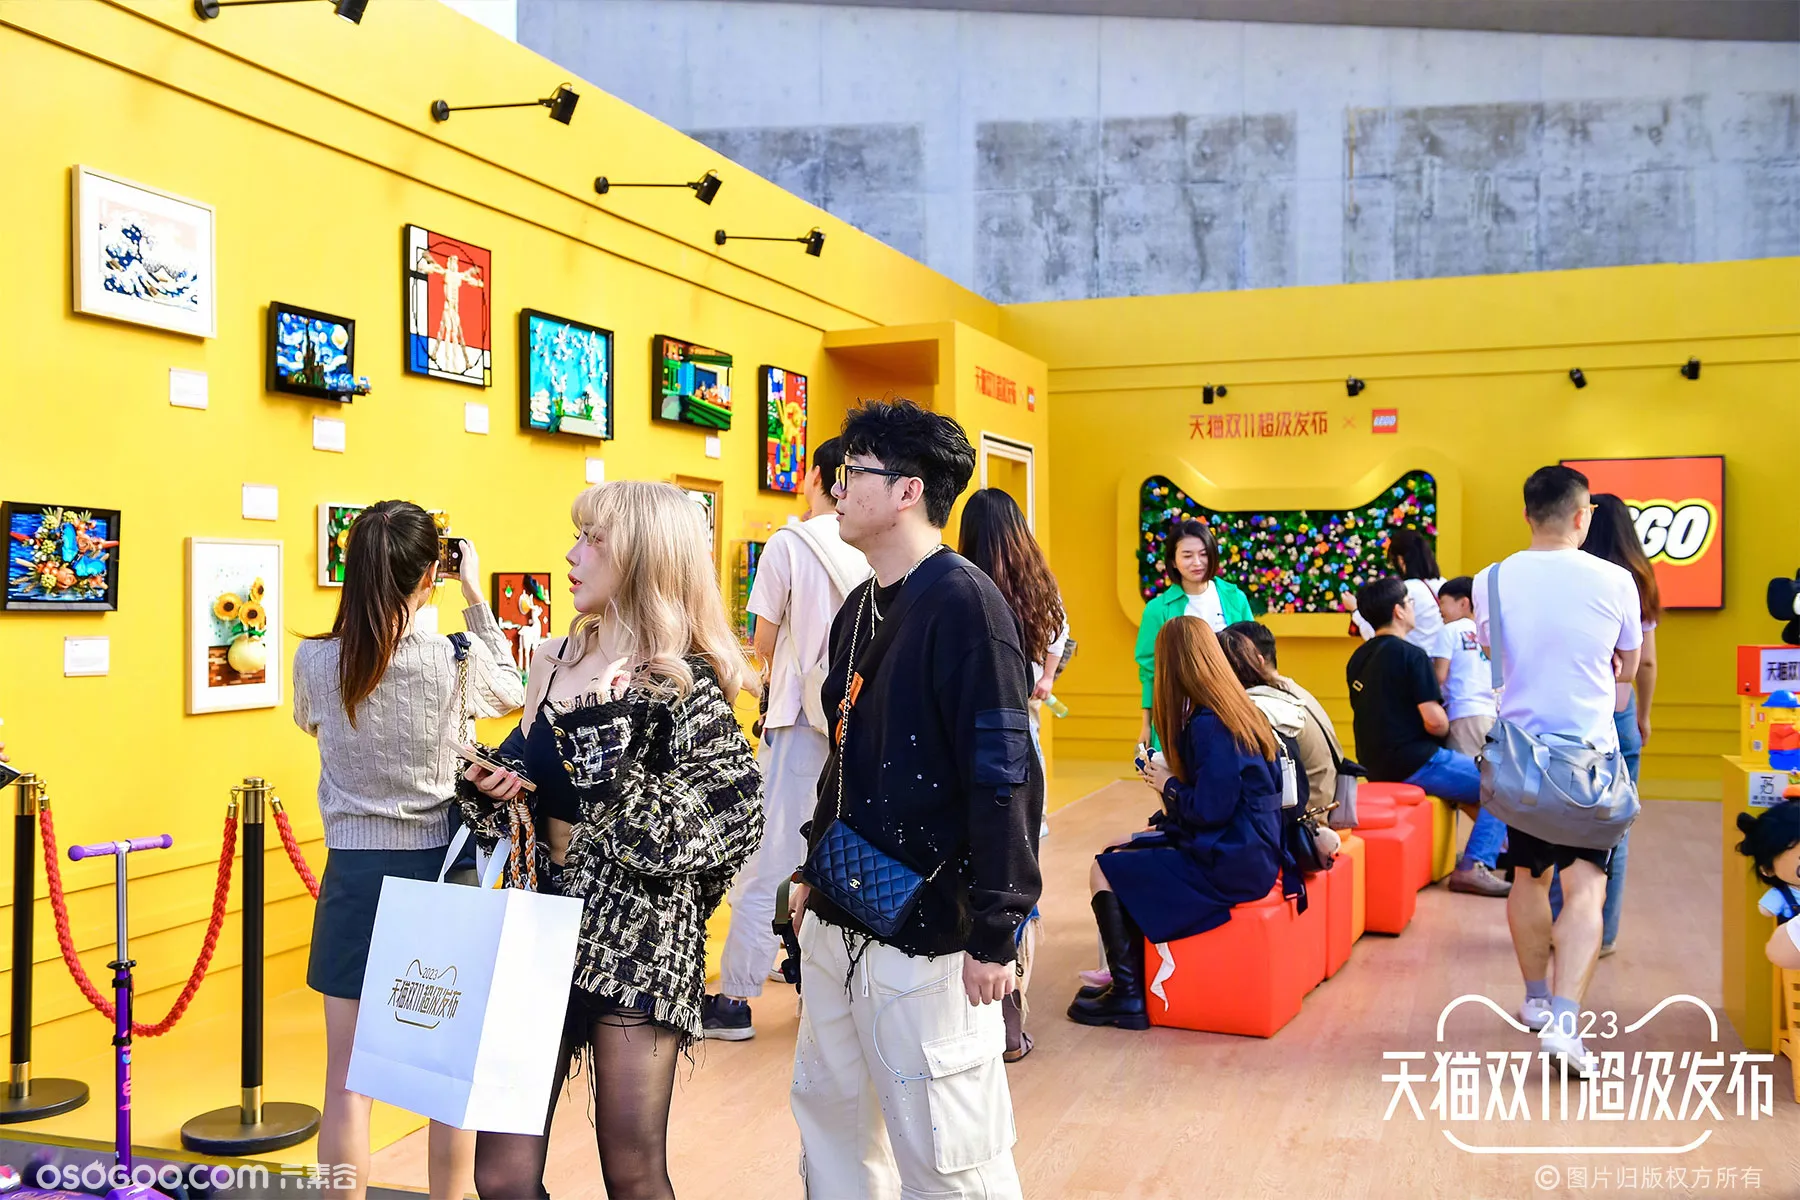 上海油罐艺术中心「天猫双11超级发布」